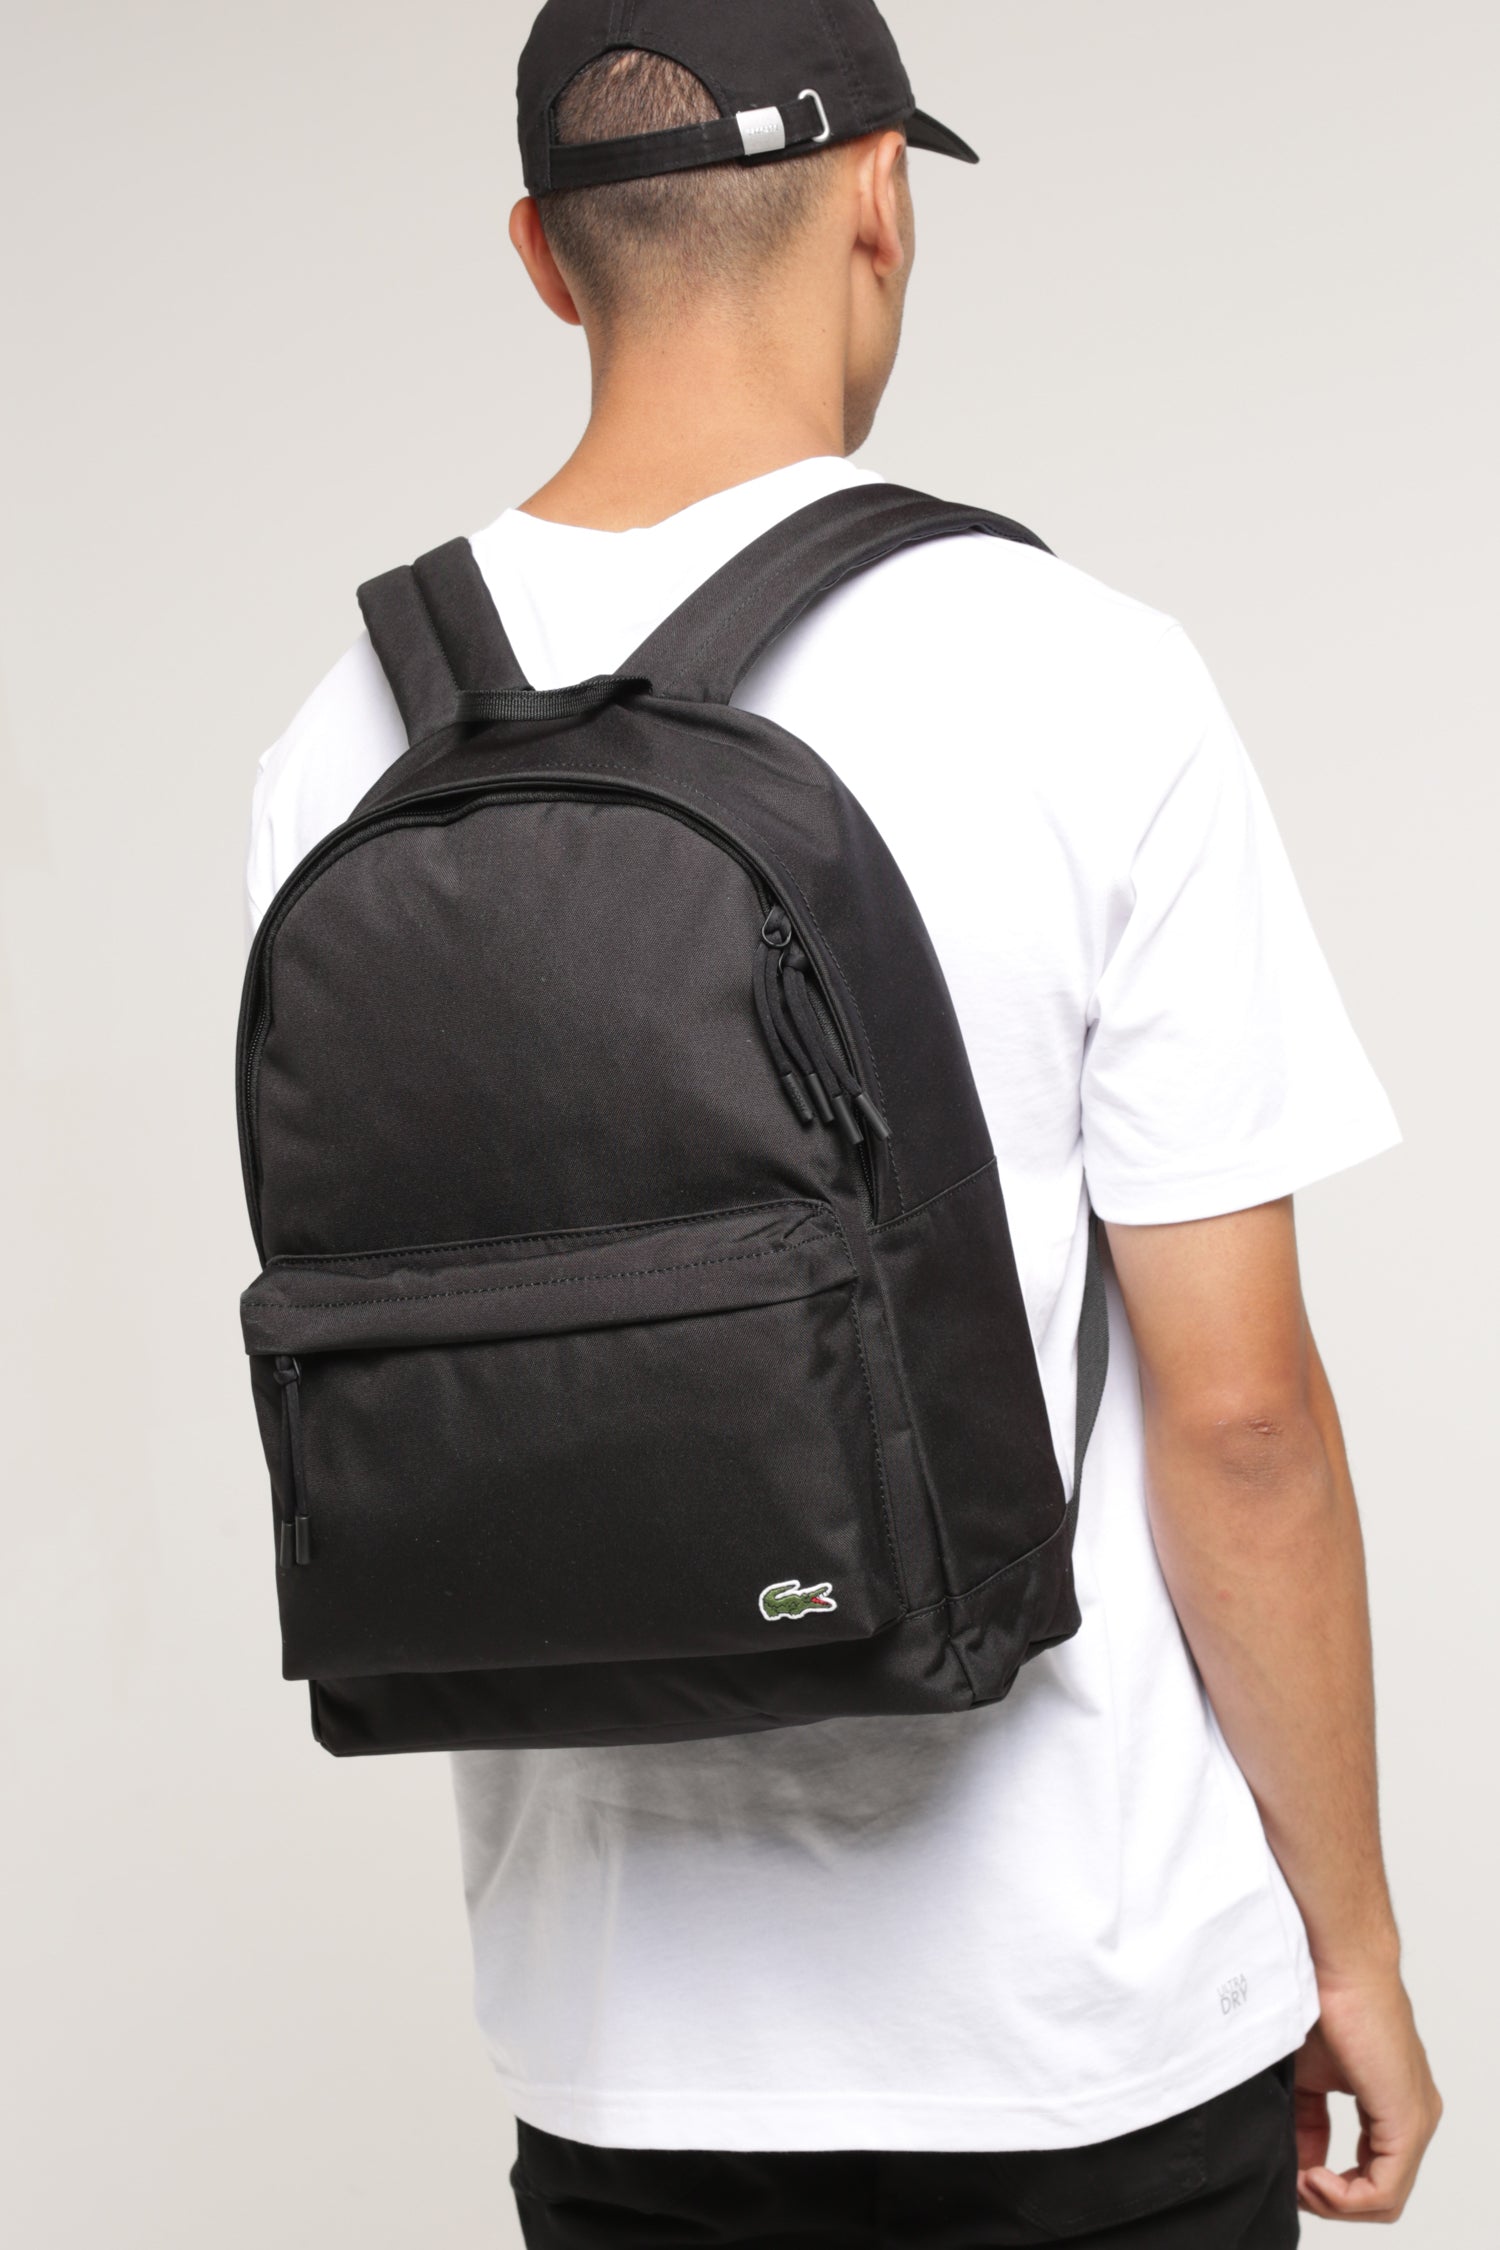 lacoste men's neocroc backpack